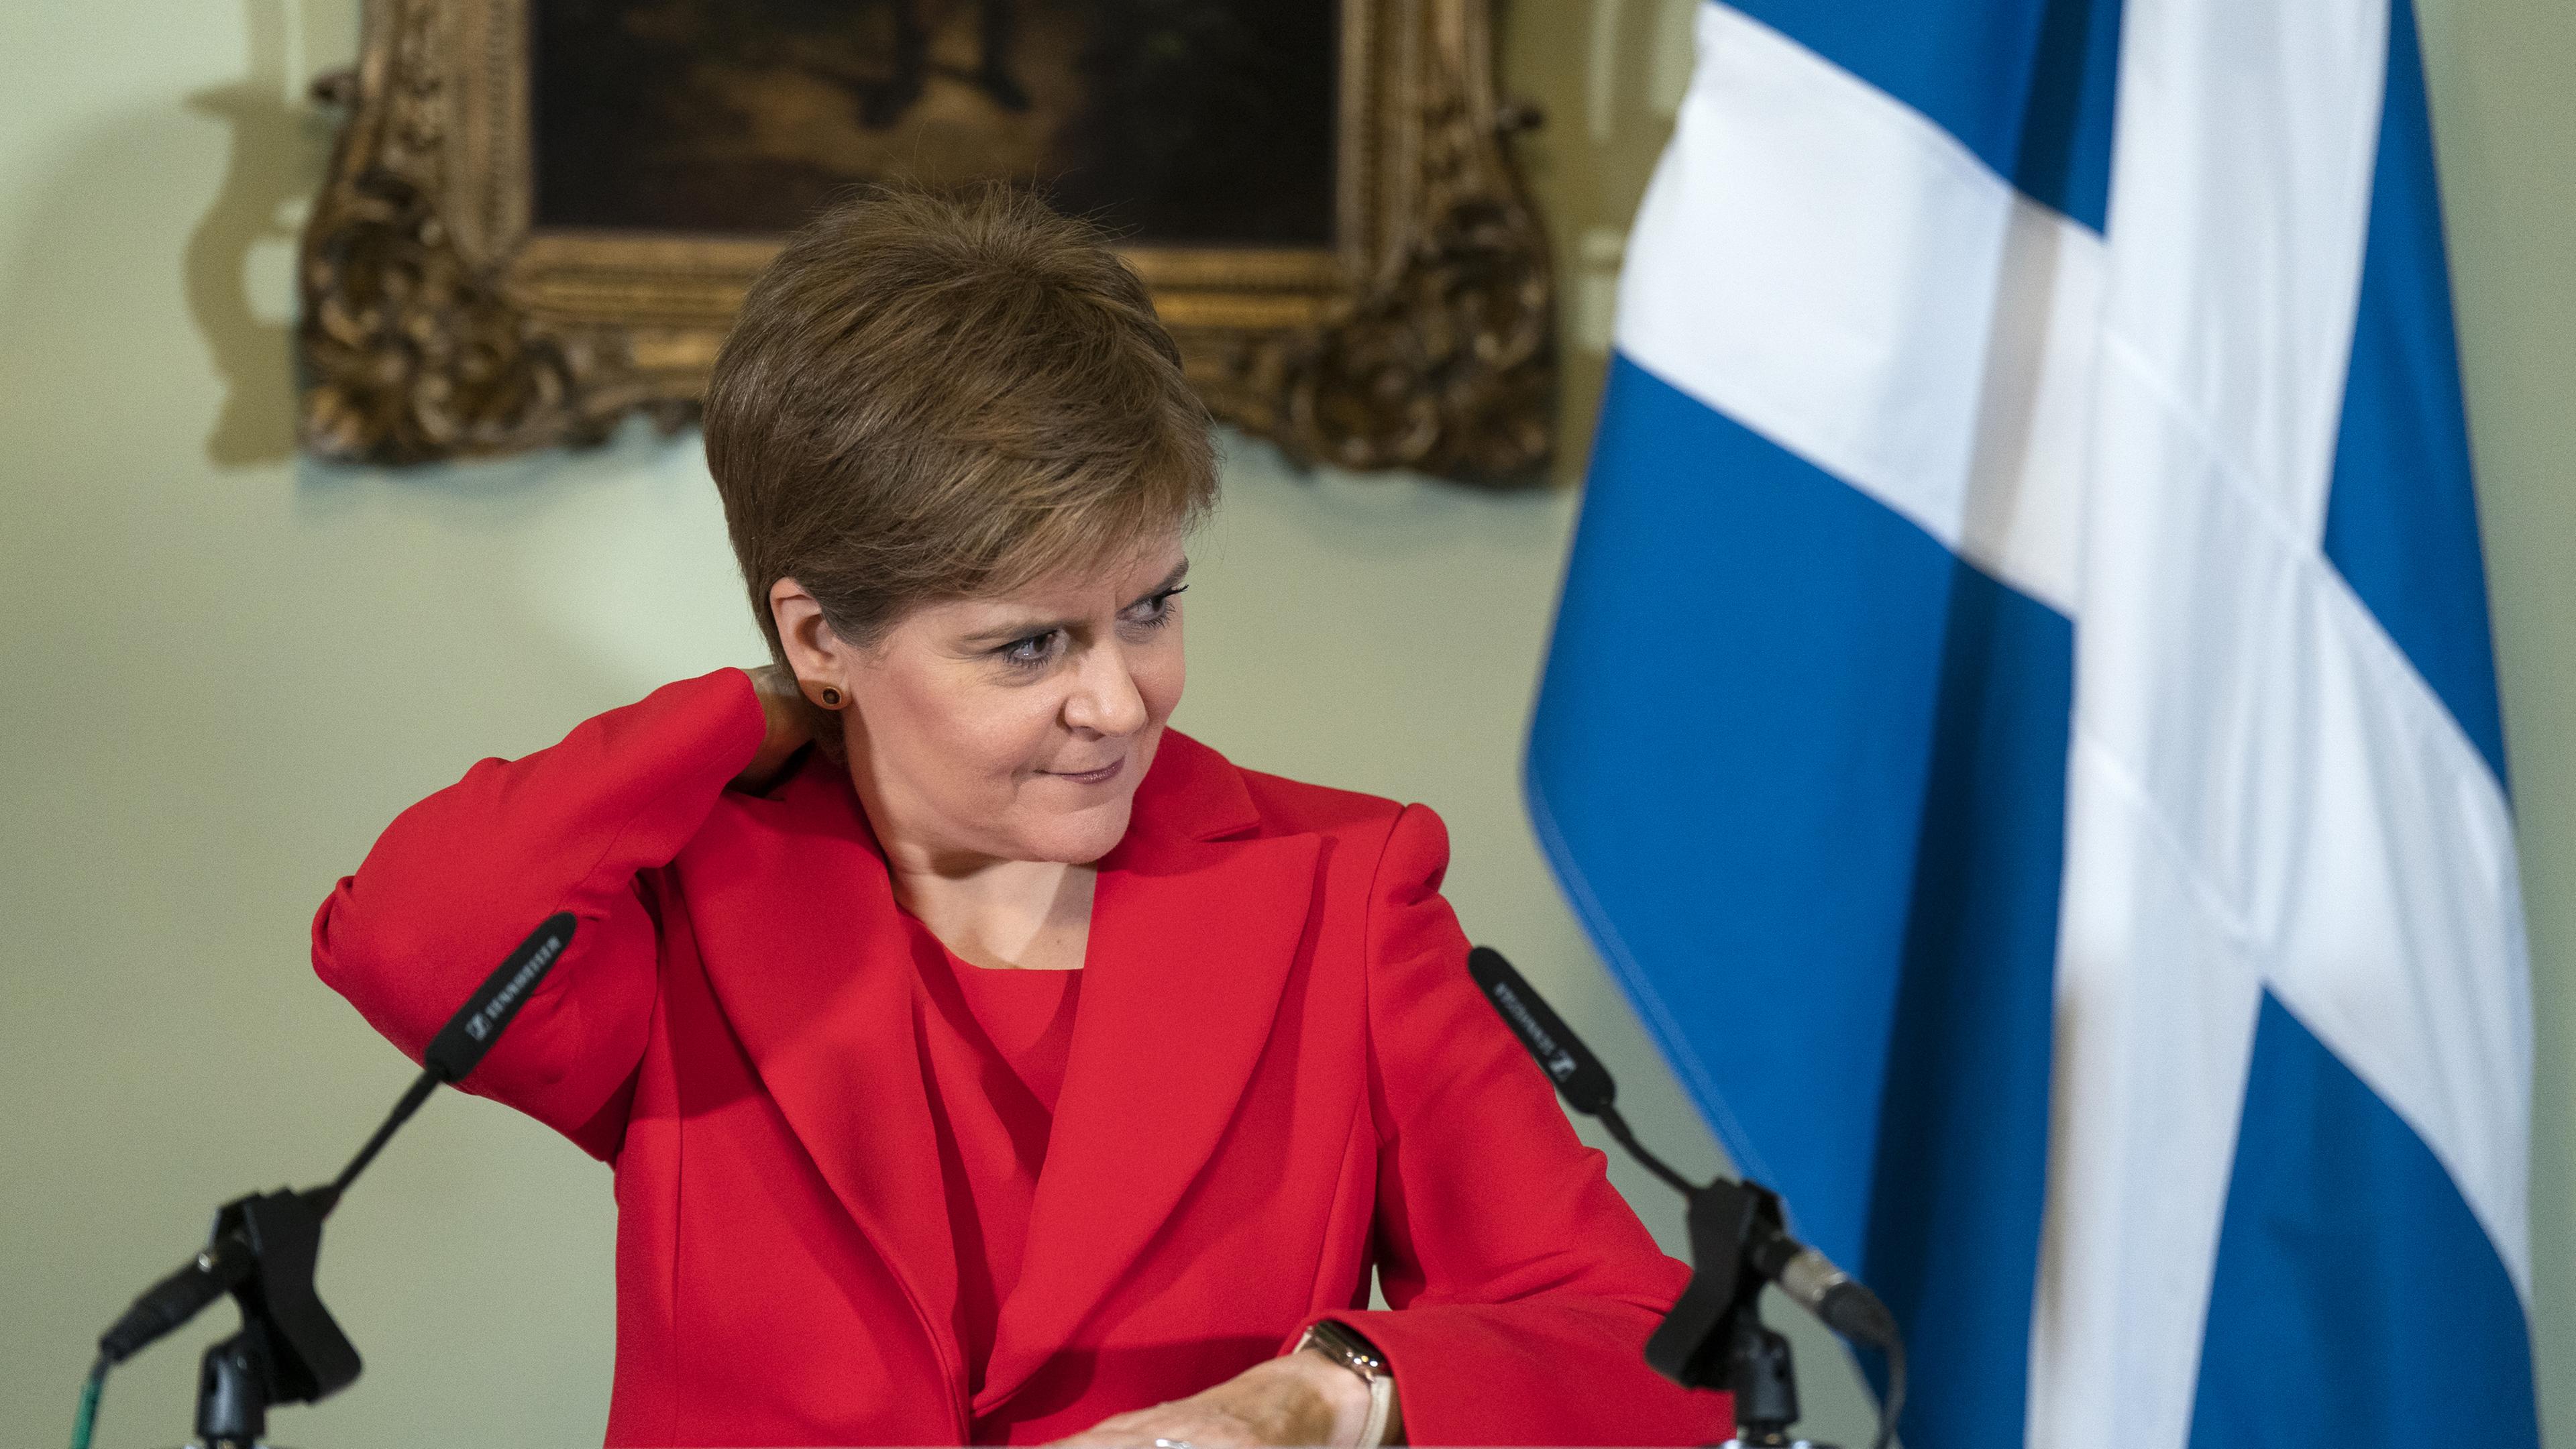 Nicola Sturgeon, schottische Premierministerin, bei der Ankündigung ihres Rücktritts im Februar.